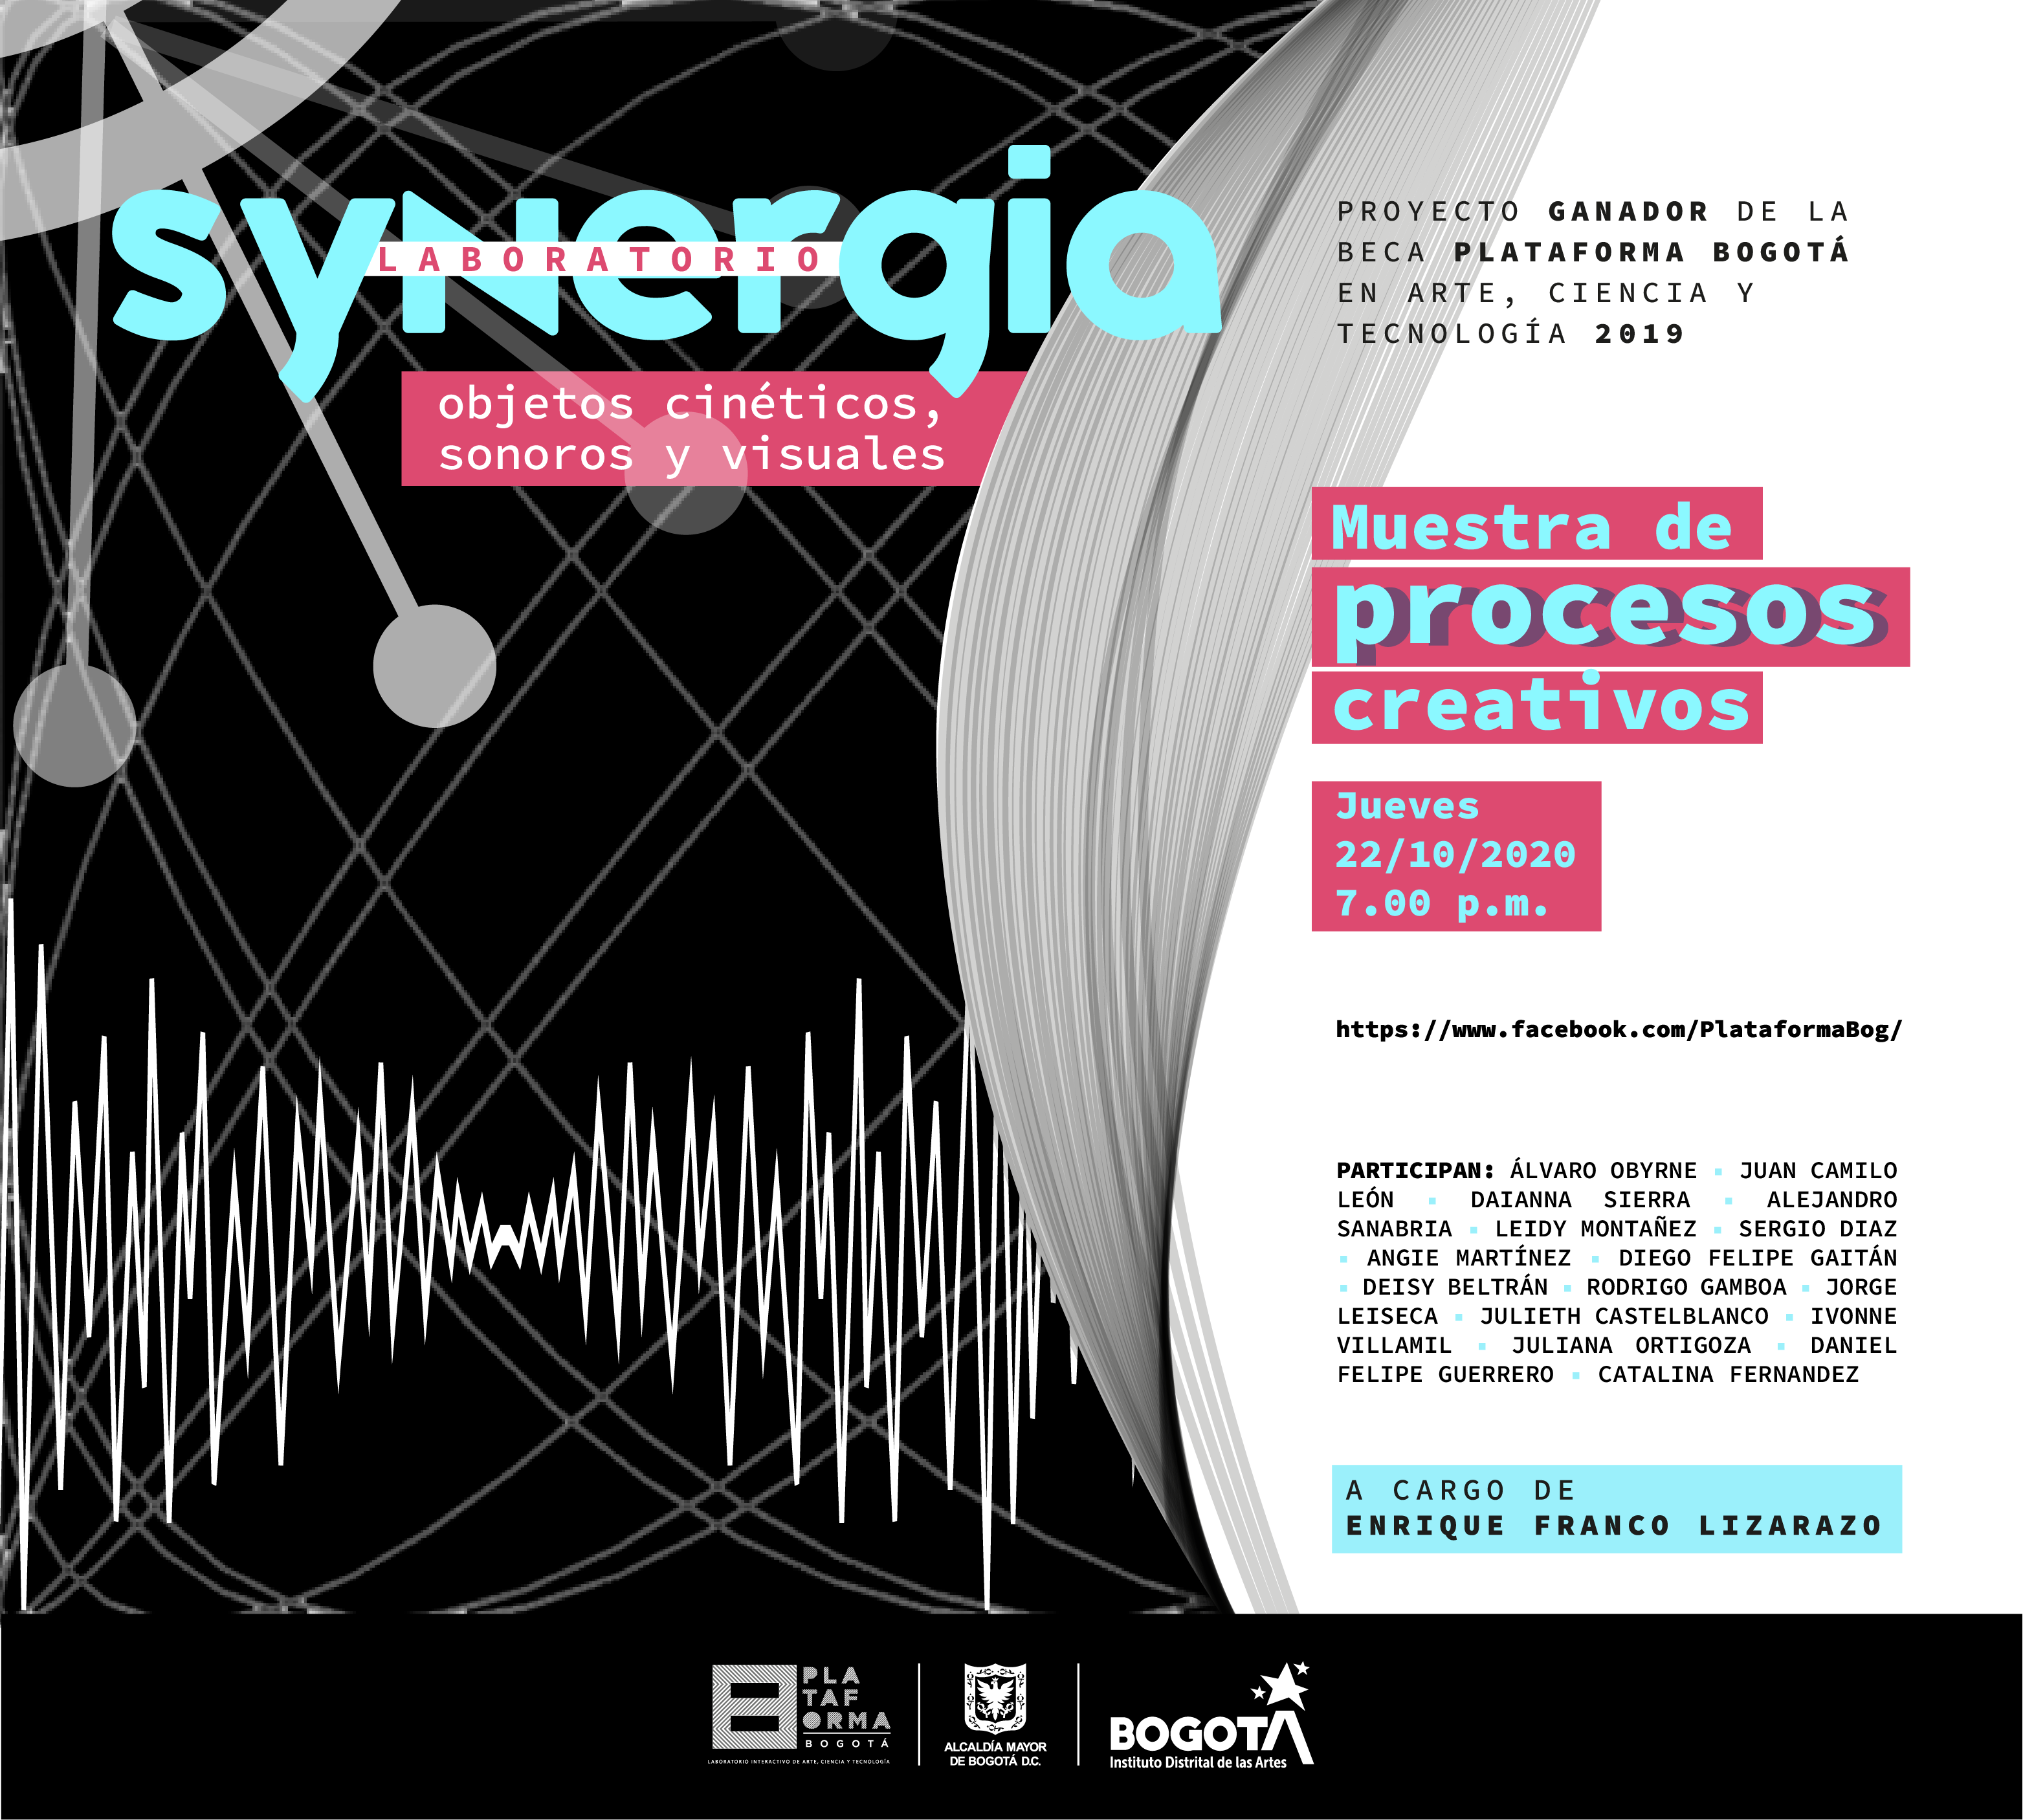 Laboratorio Synergia Objetos cinéticos, visuales y sonoros